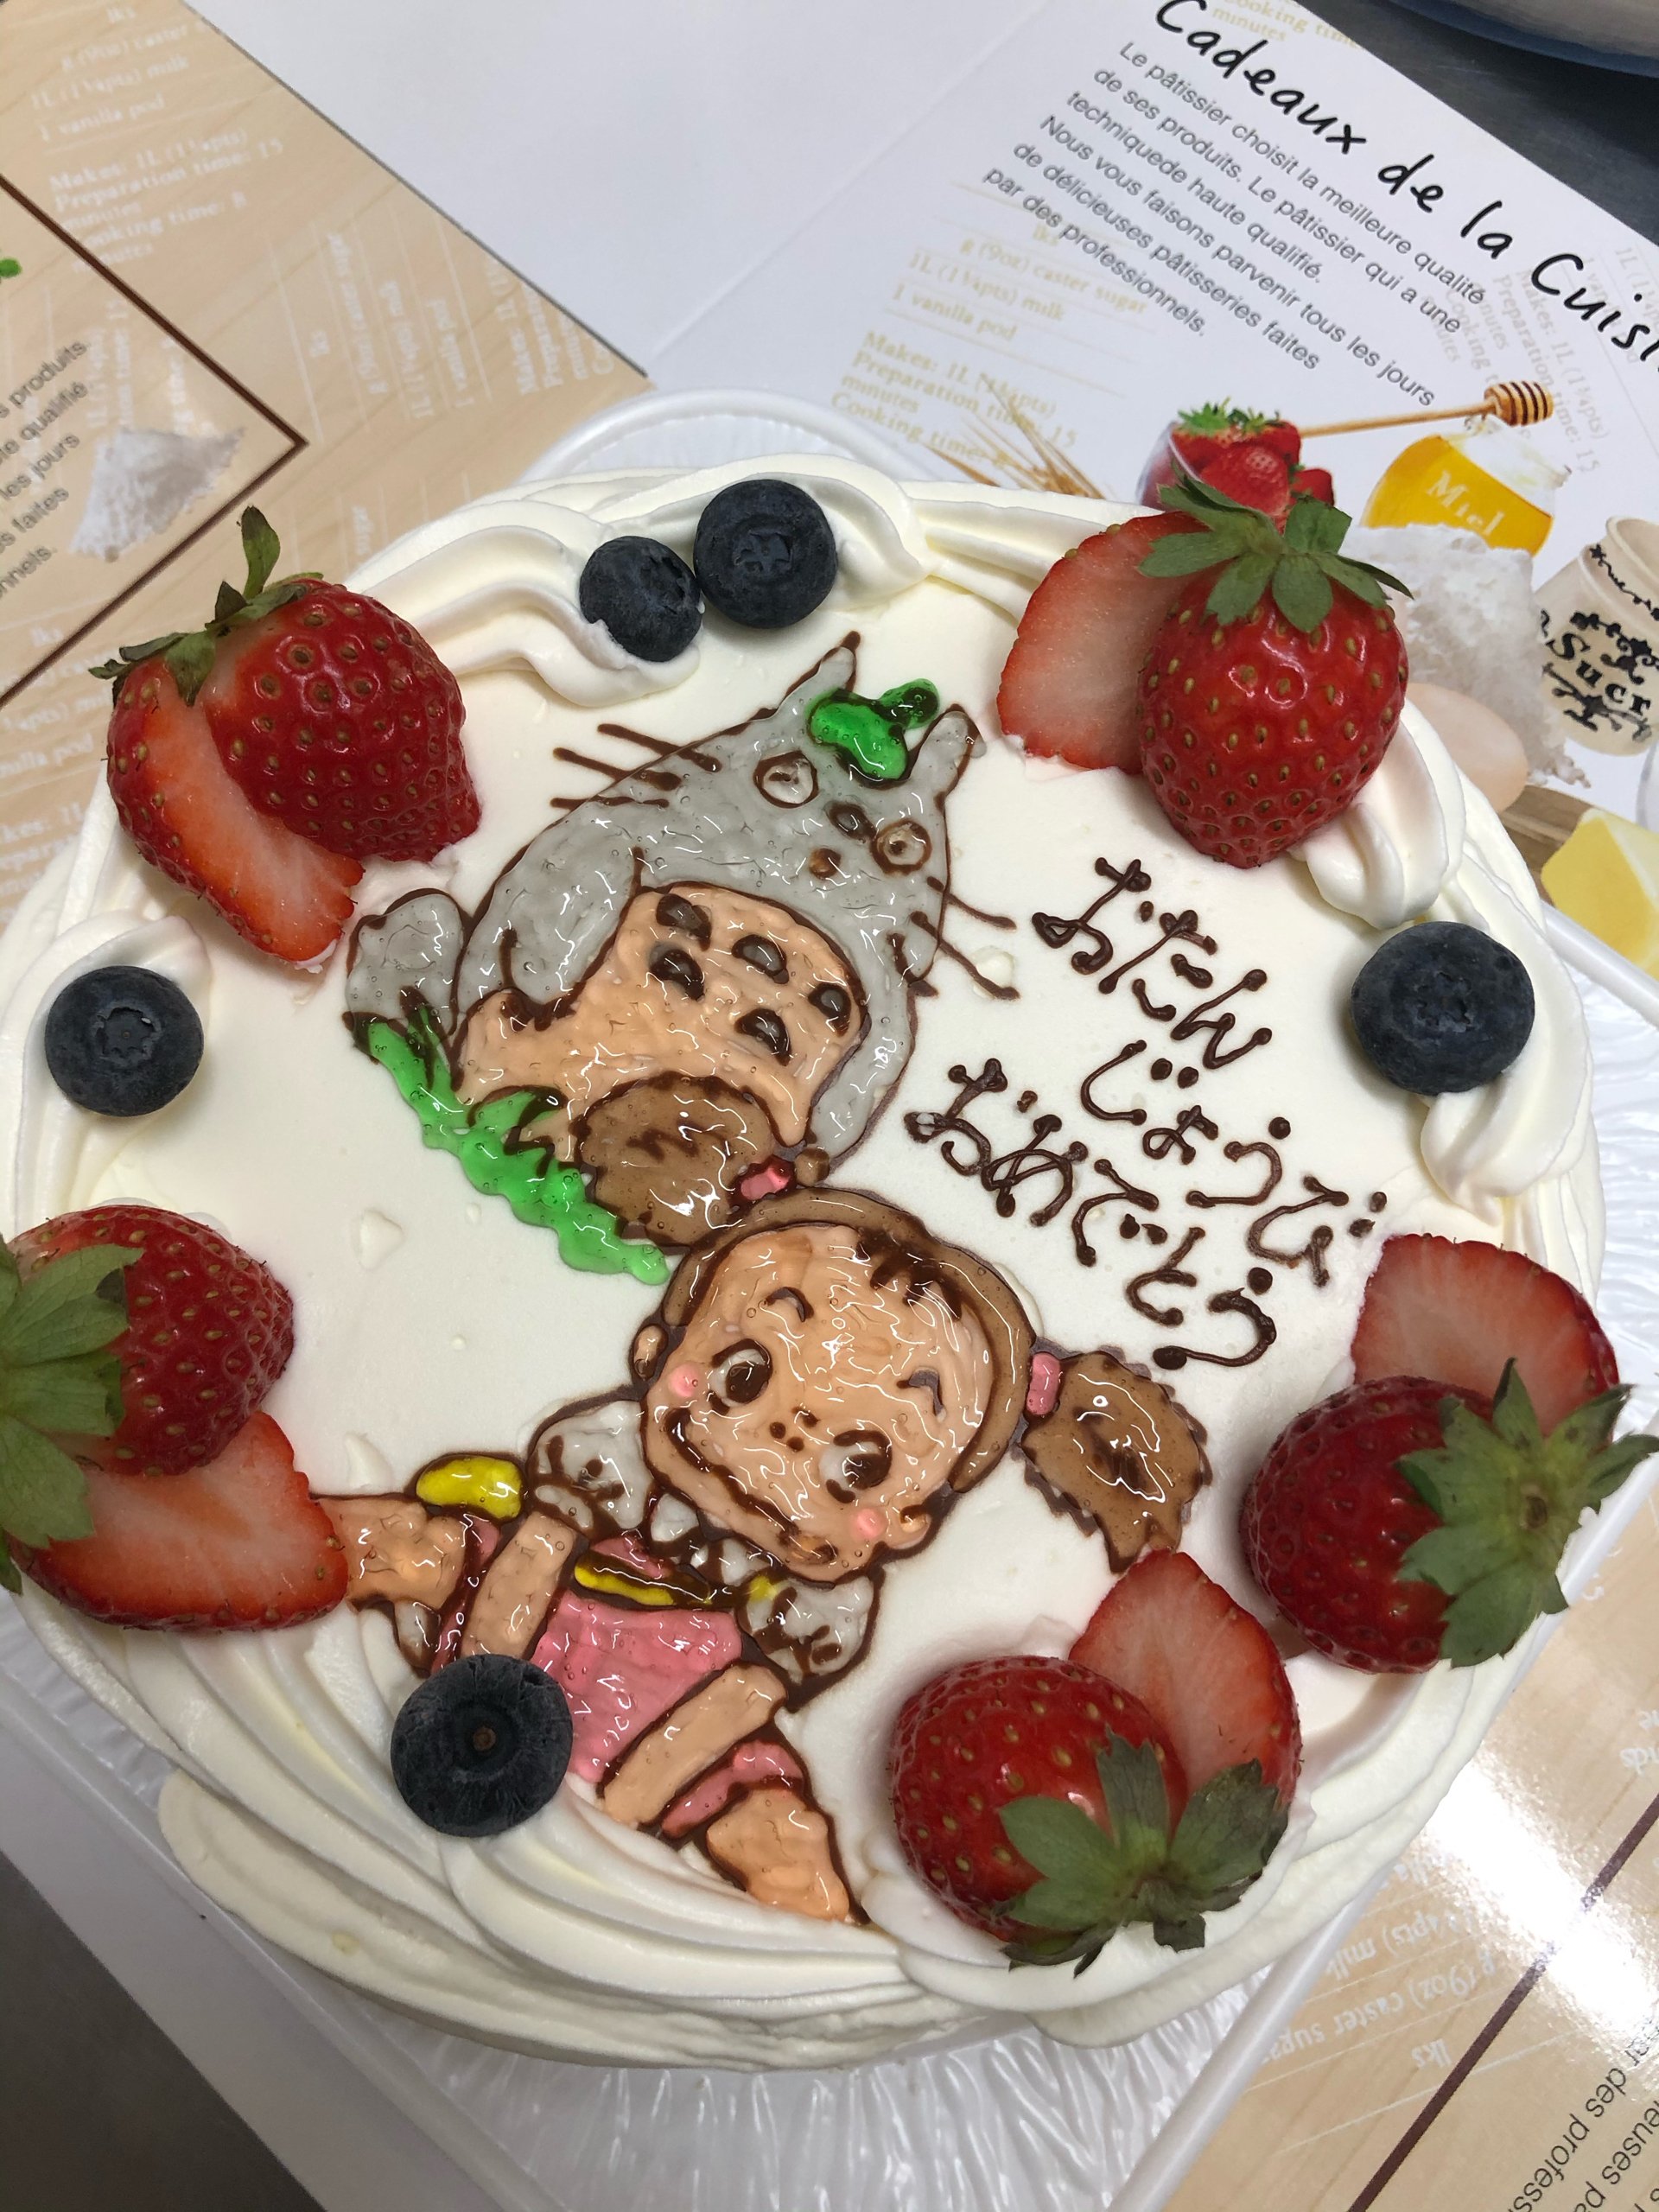 営業中です 10 13 福島市のケーキ スイーツショップ ふぁぶーる オリジナルデコレーションケーキがオススメ